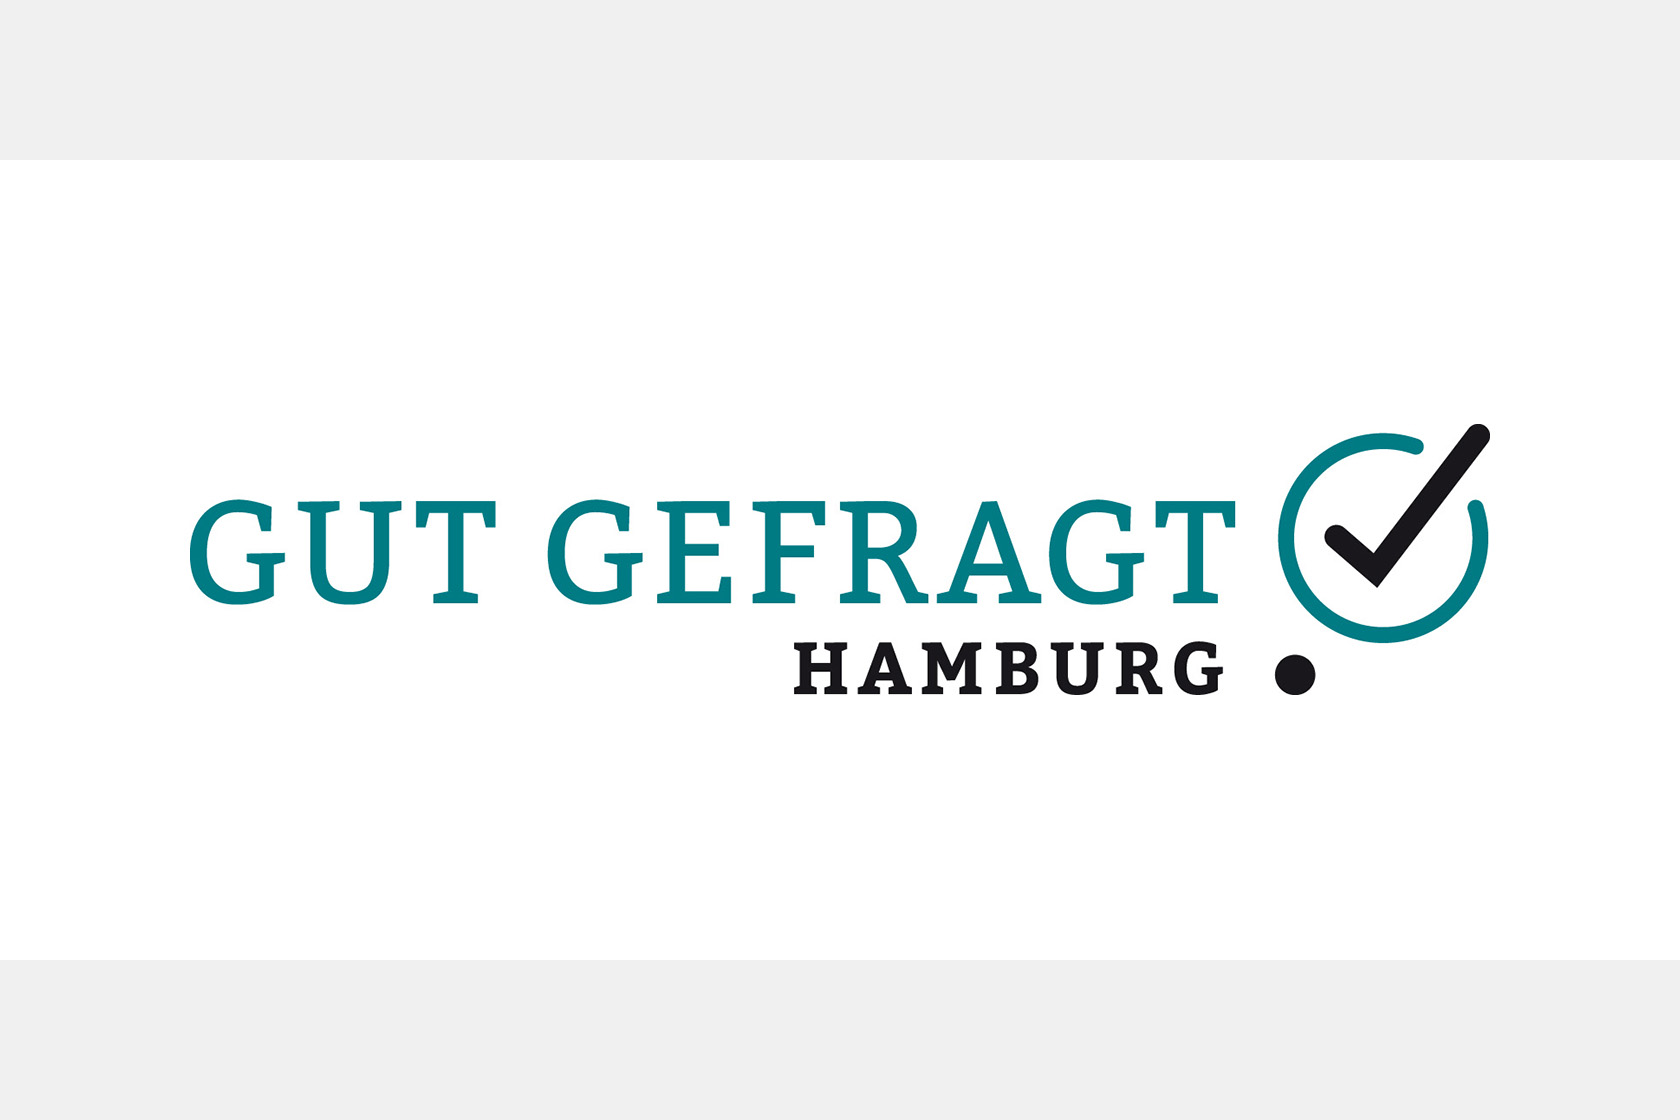 Logo von GUT GEFRAGT: Es zeigt den Firmennamen in Großbuchstaben und blaugrüner Schrift. Daneben ist ein schwarzer Haken in einem blaugrünen Kreis. Darunter steht Hamburg in Schwarz.